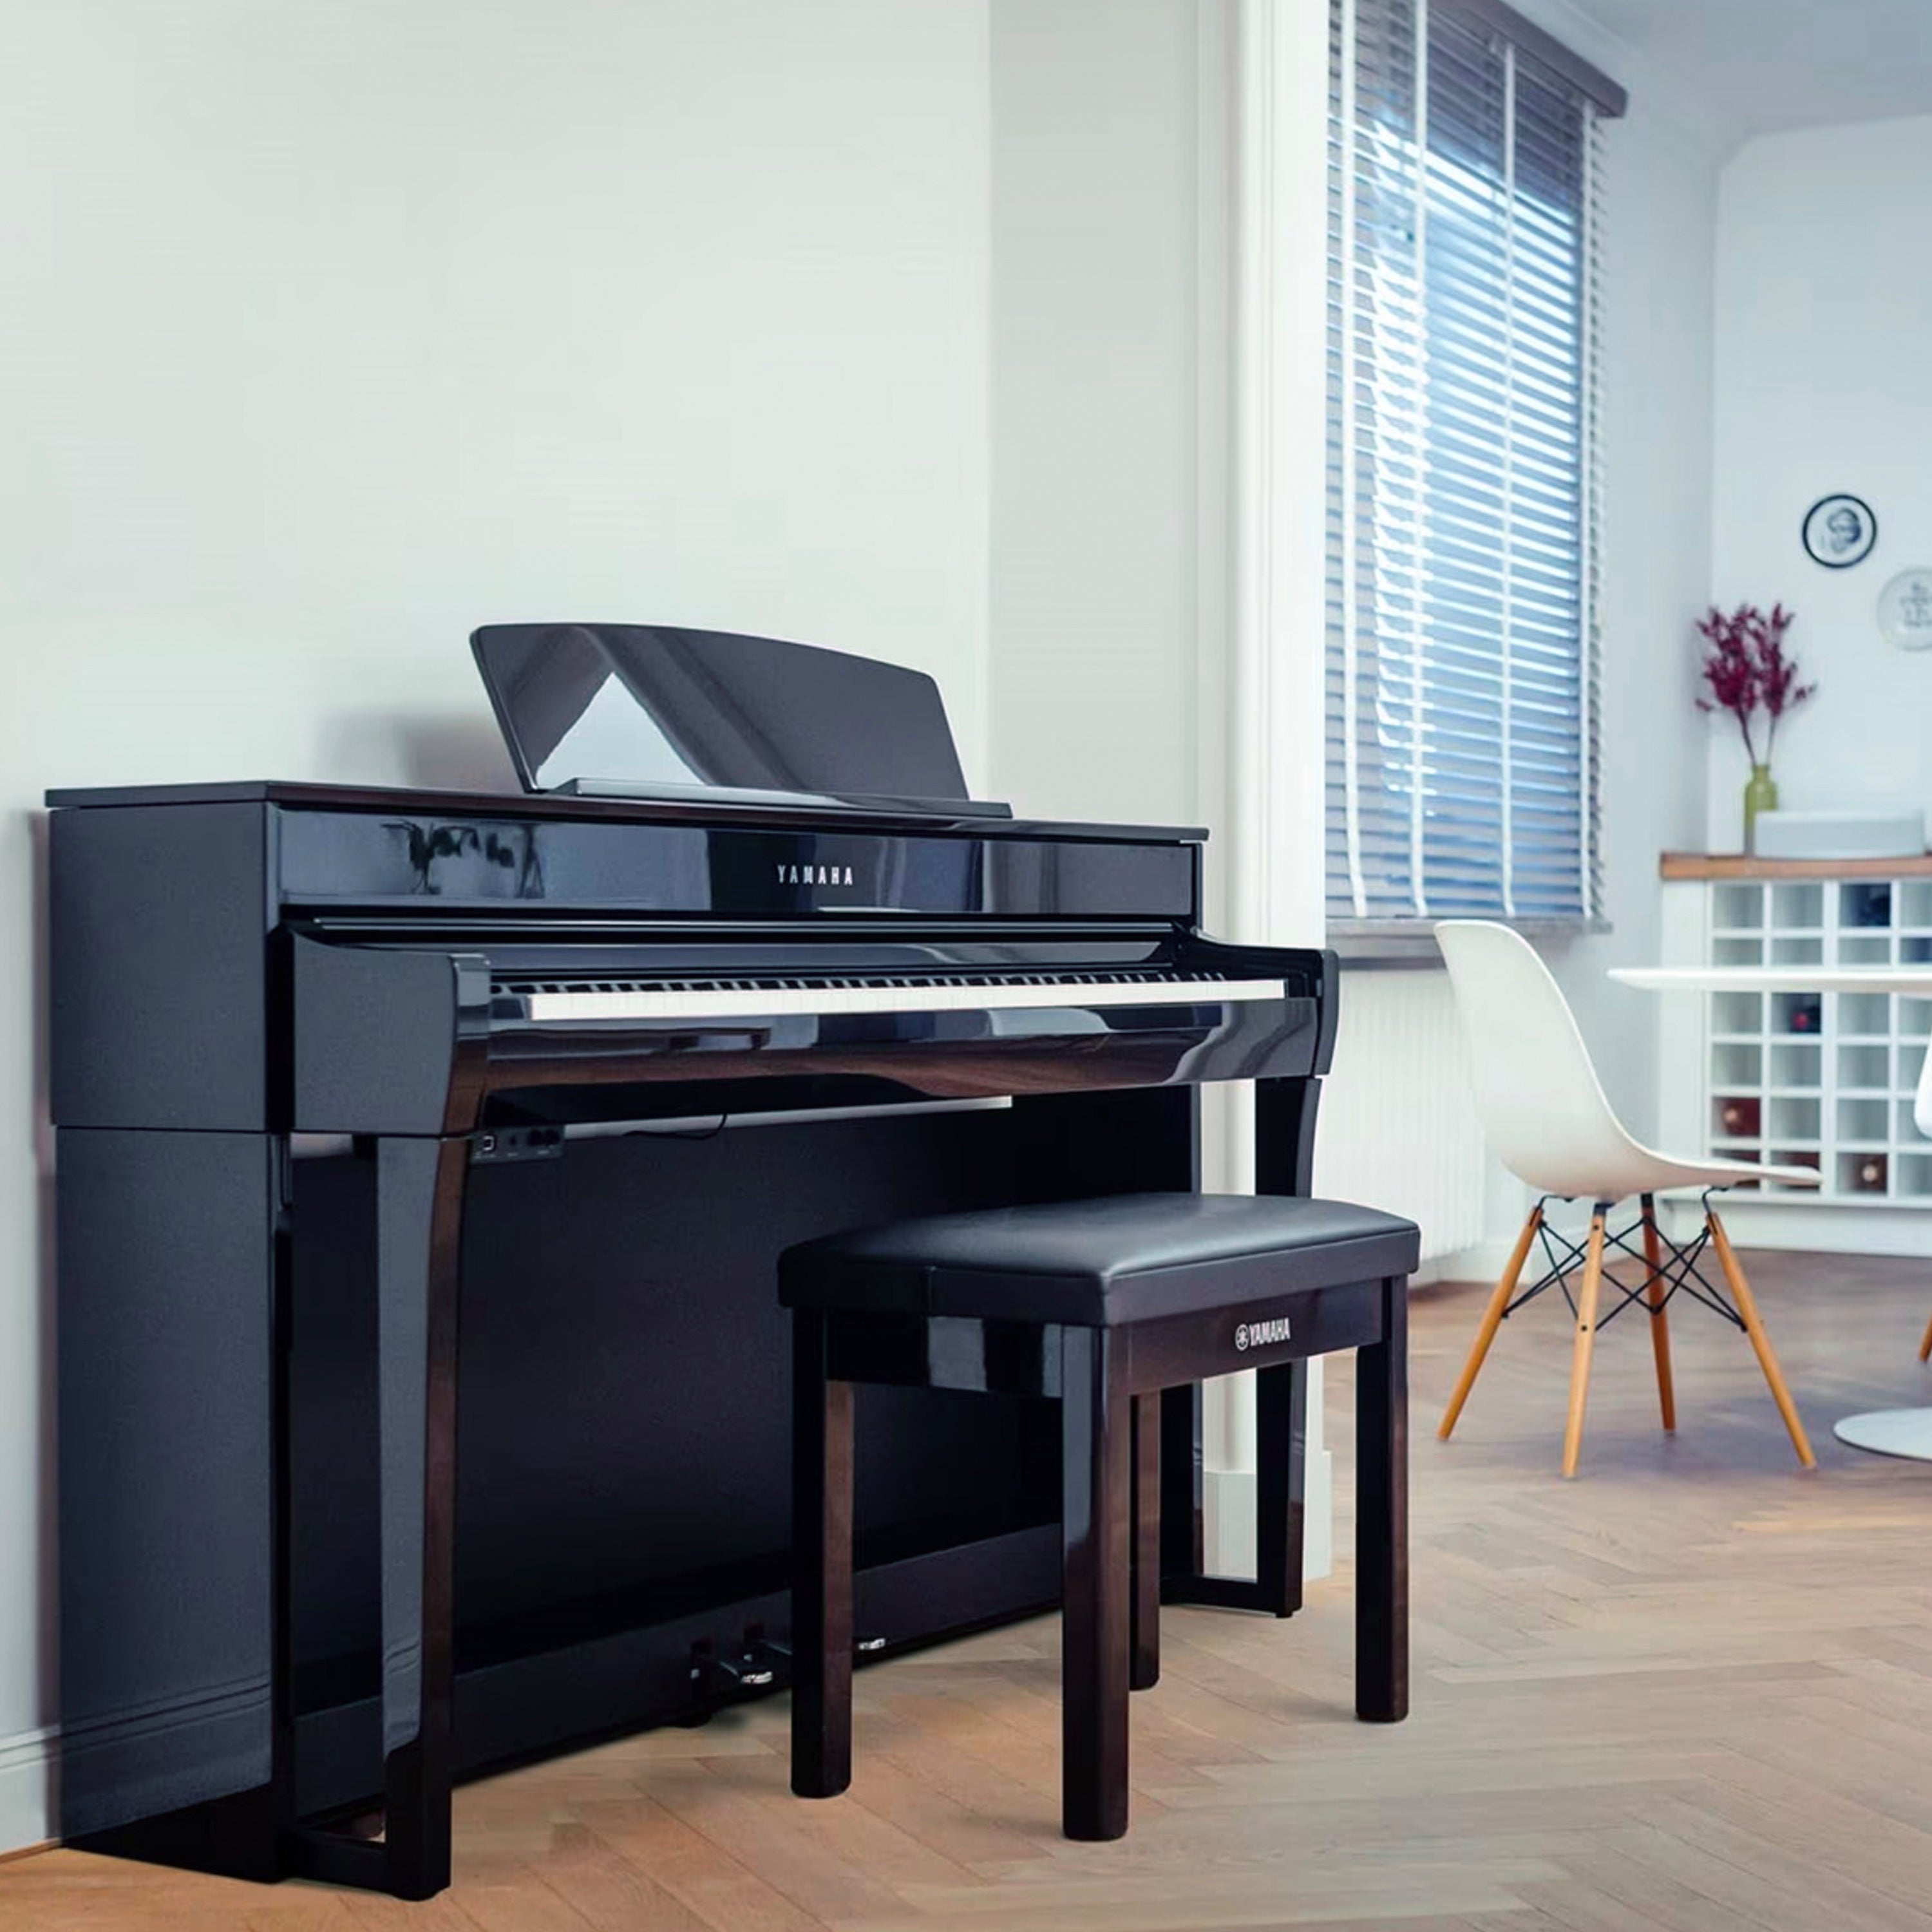 Yamaha Clavinova CLP-745 Digital Piano - Polished Ebony